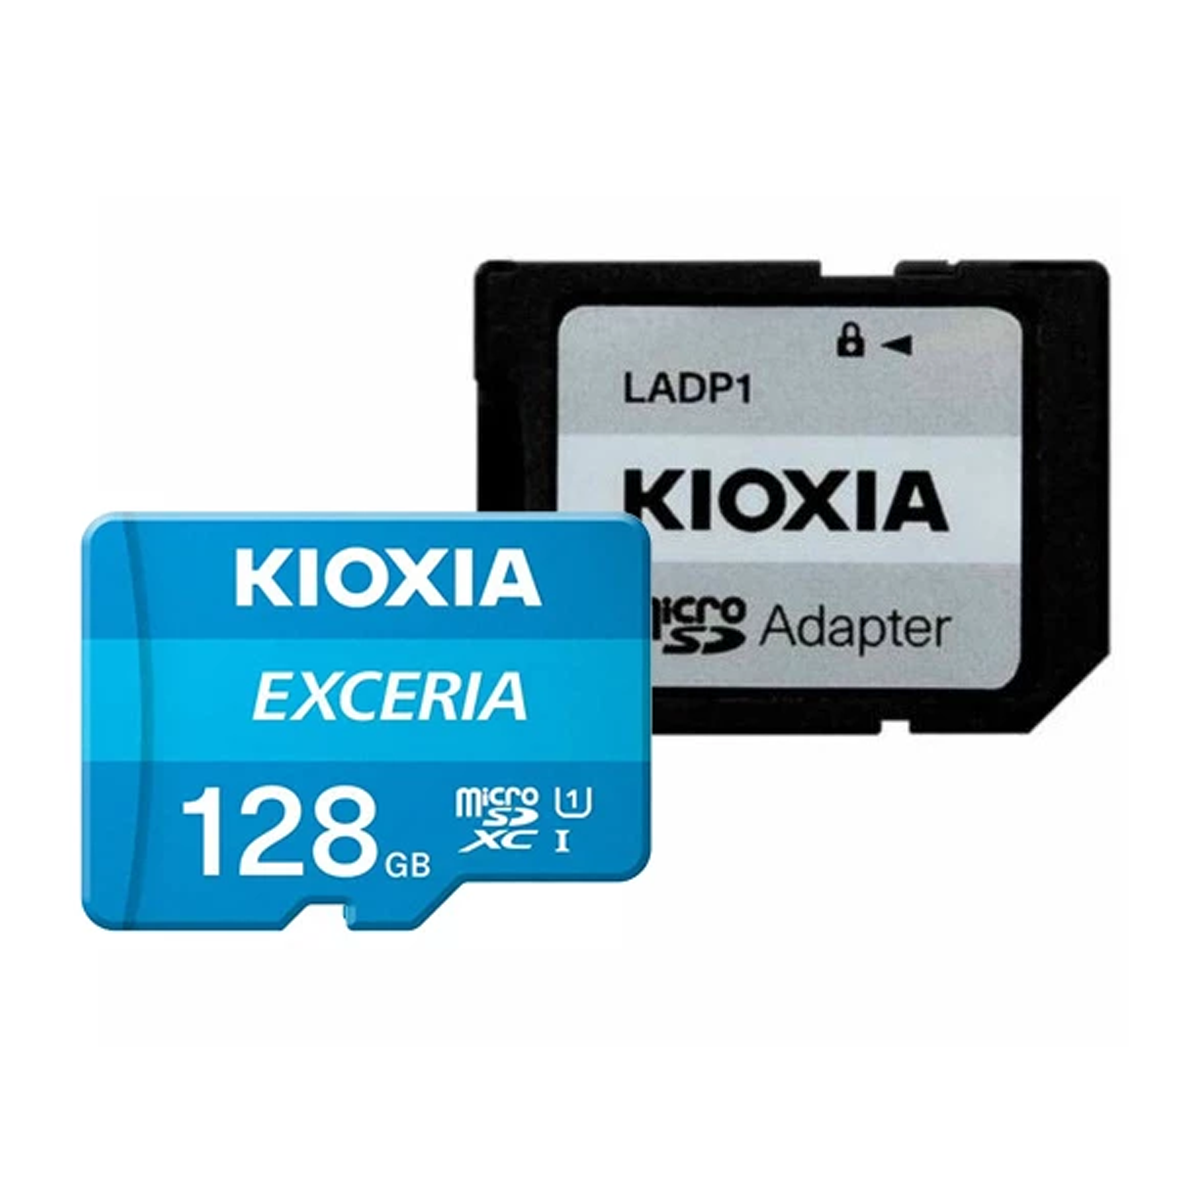 کارت حافظه microSDXC کیوکسیا مدل EXCERIA کلاس 10 استاندارد UHS-I U1 سرعت 100MBps ظرفیت 128 گیگابایت به همراه آداپتور SD-آبی